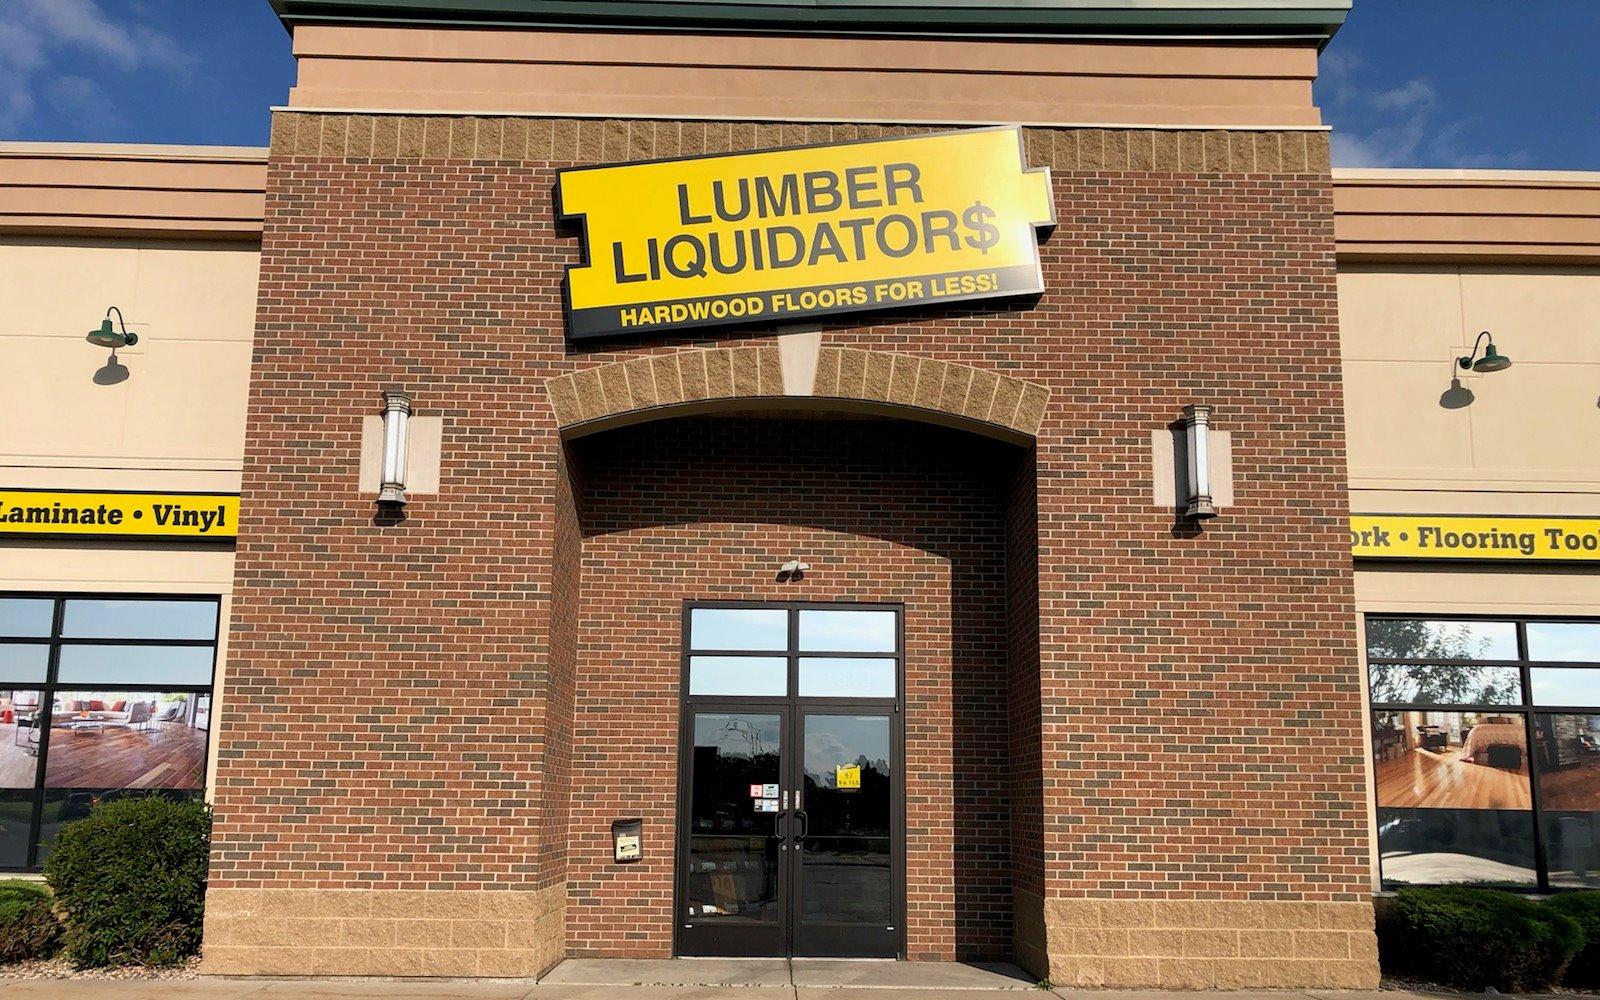 Ll Flooring Lumber Liquidators 1397, Ralph’s Hardwood Floors Appleton Wi